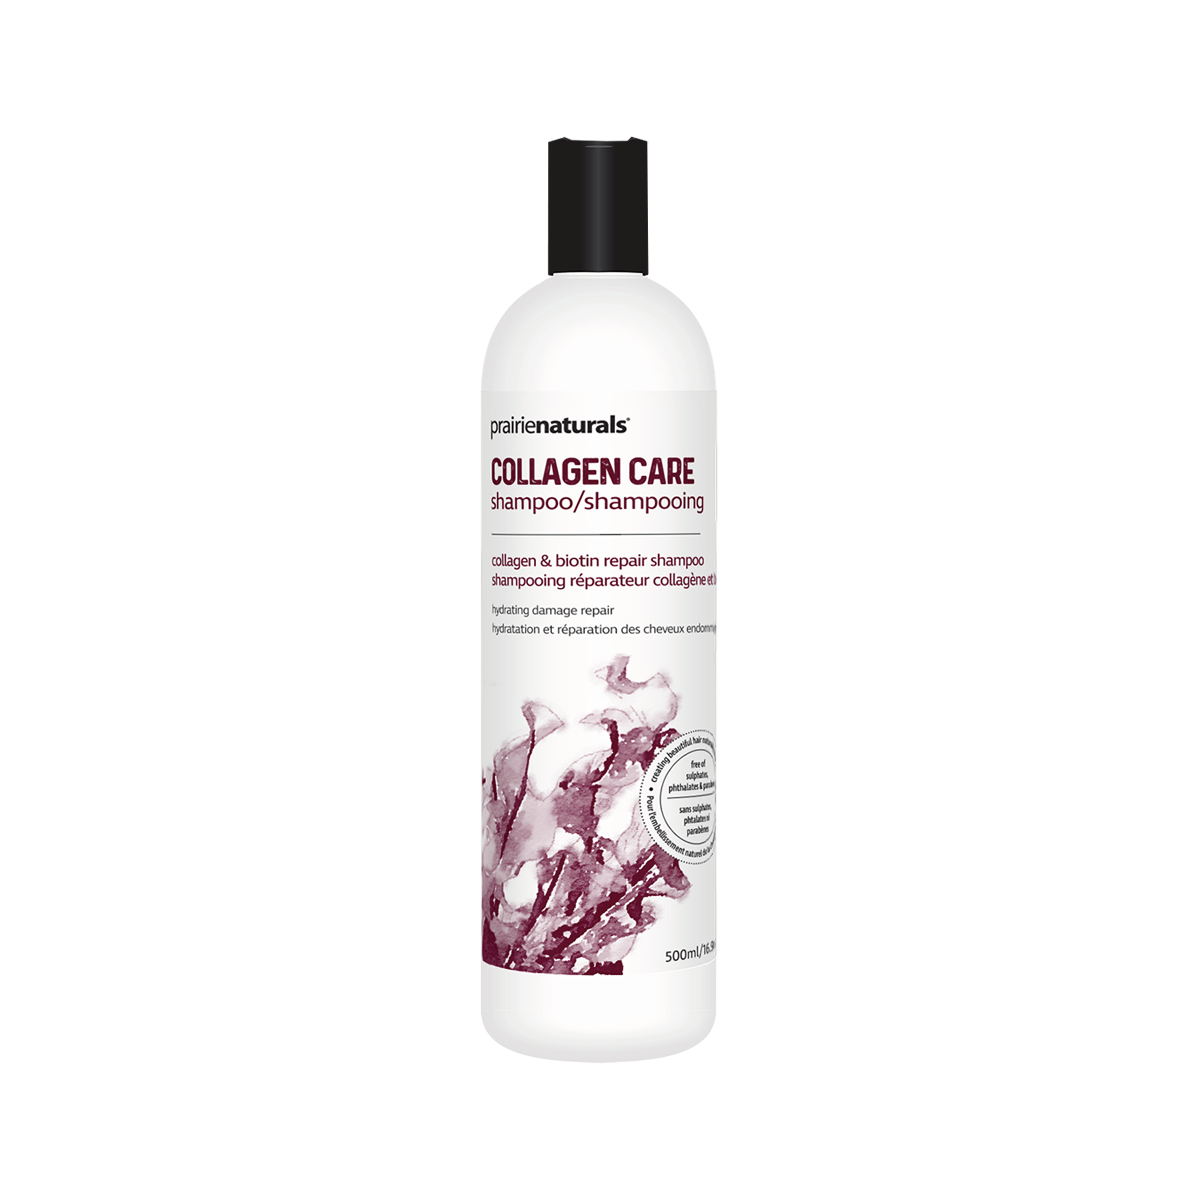 Prairie Naturals Collagen Care Marine Collagen & Biotin Shampoo / Shampooing 500ml